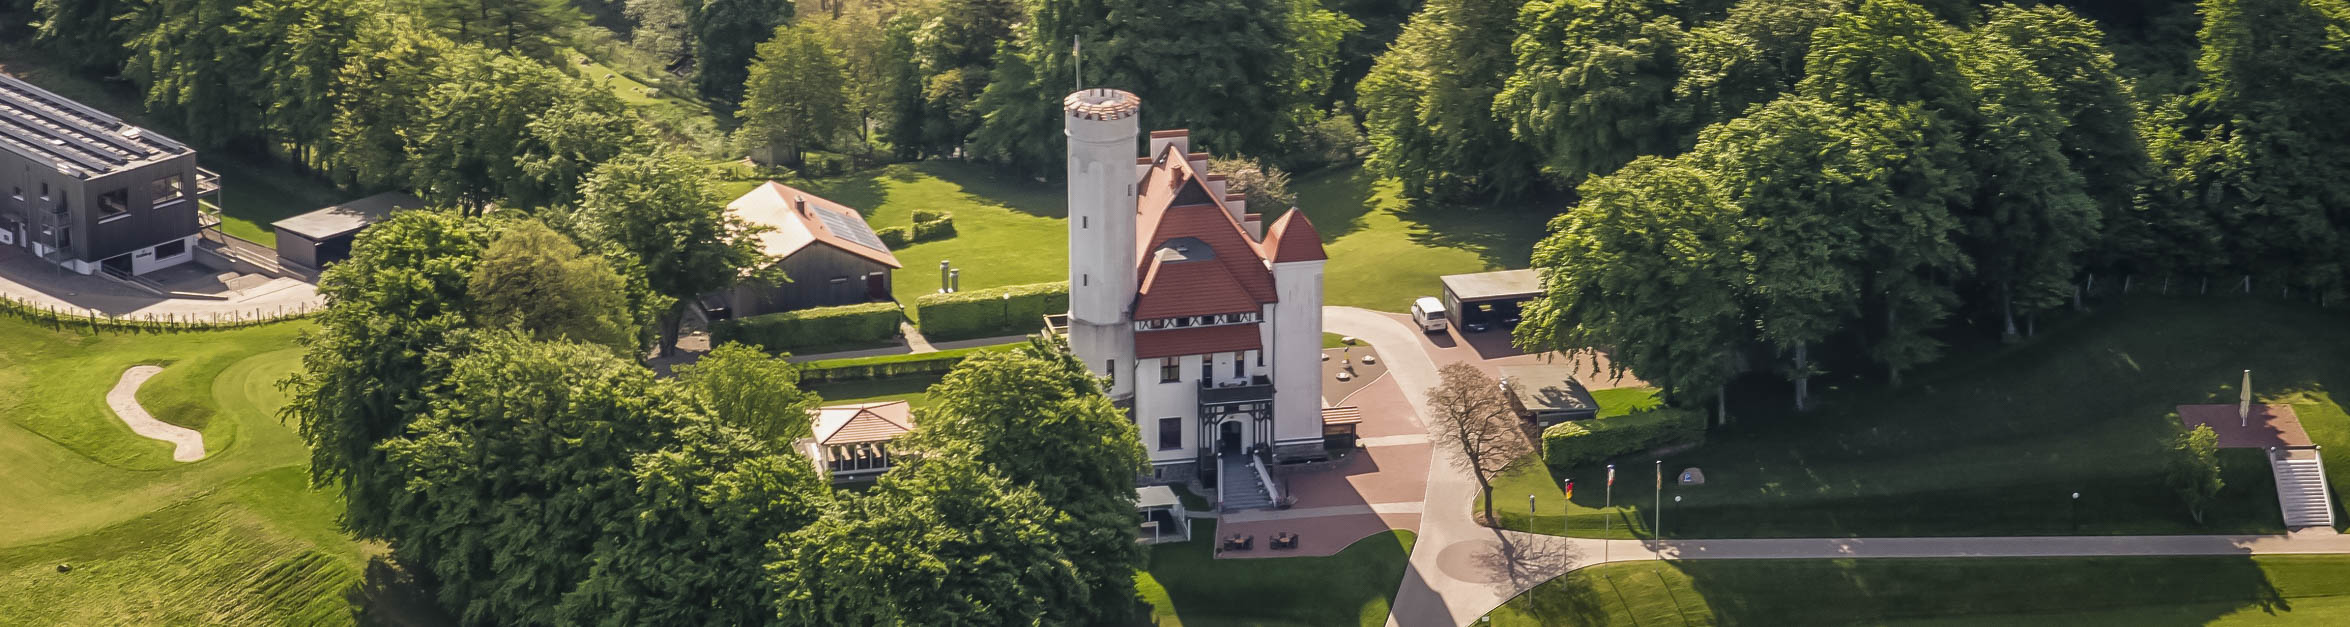 Hotel Schloss Ranzow auf Rügen - Ihr top Golfhotel auf Rügen und Ihr Privathotel an der Ostsee für Wellness und Entspannung pur